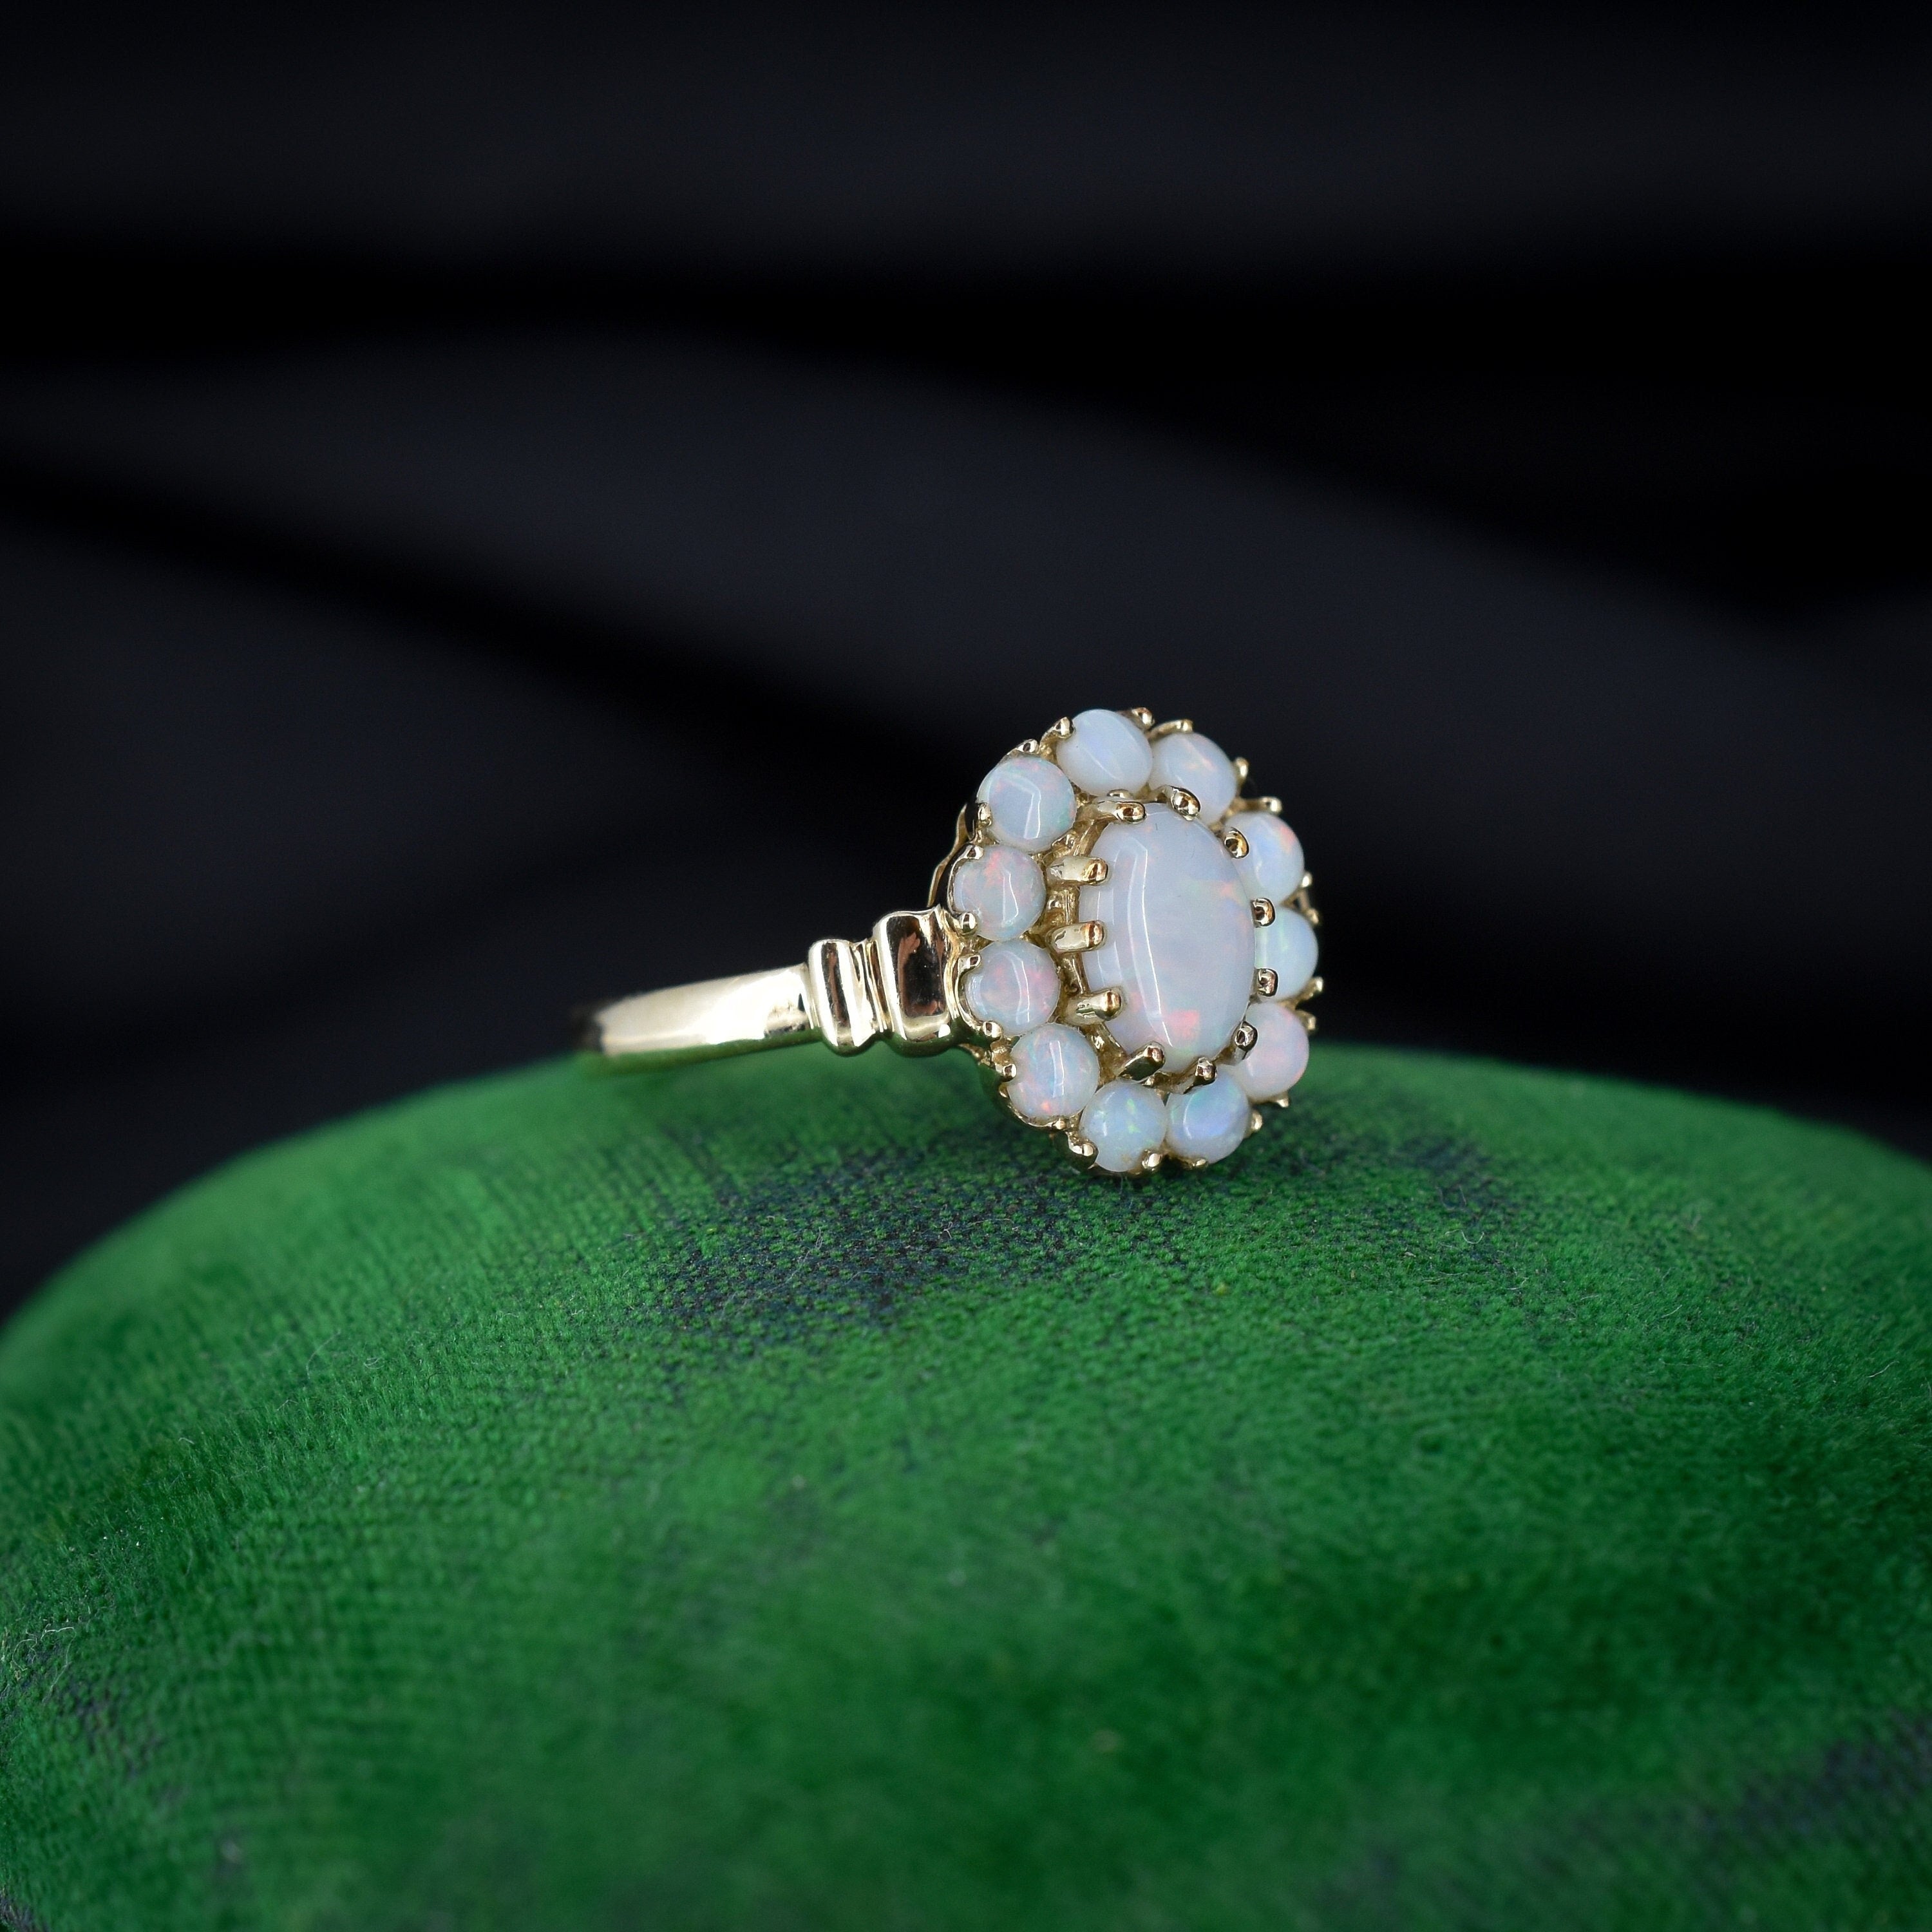 opal ring 5442 - Australian Opal Jewelry - Opal Pendants, Opal Rings, Opal  Bracelets & Earrings